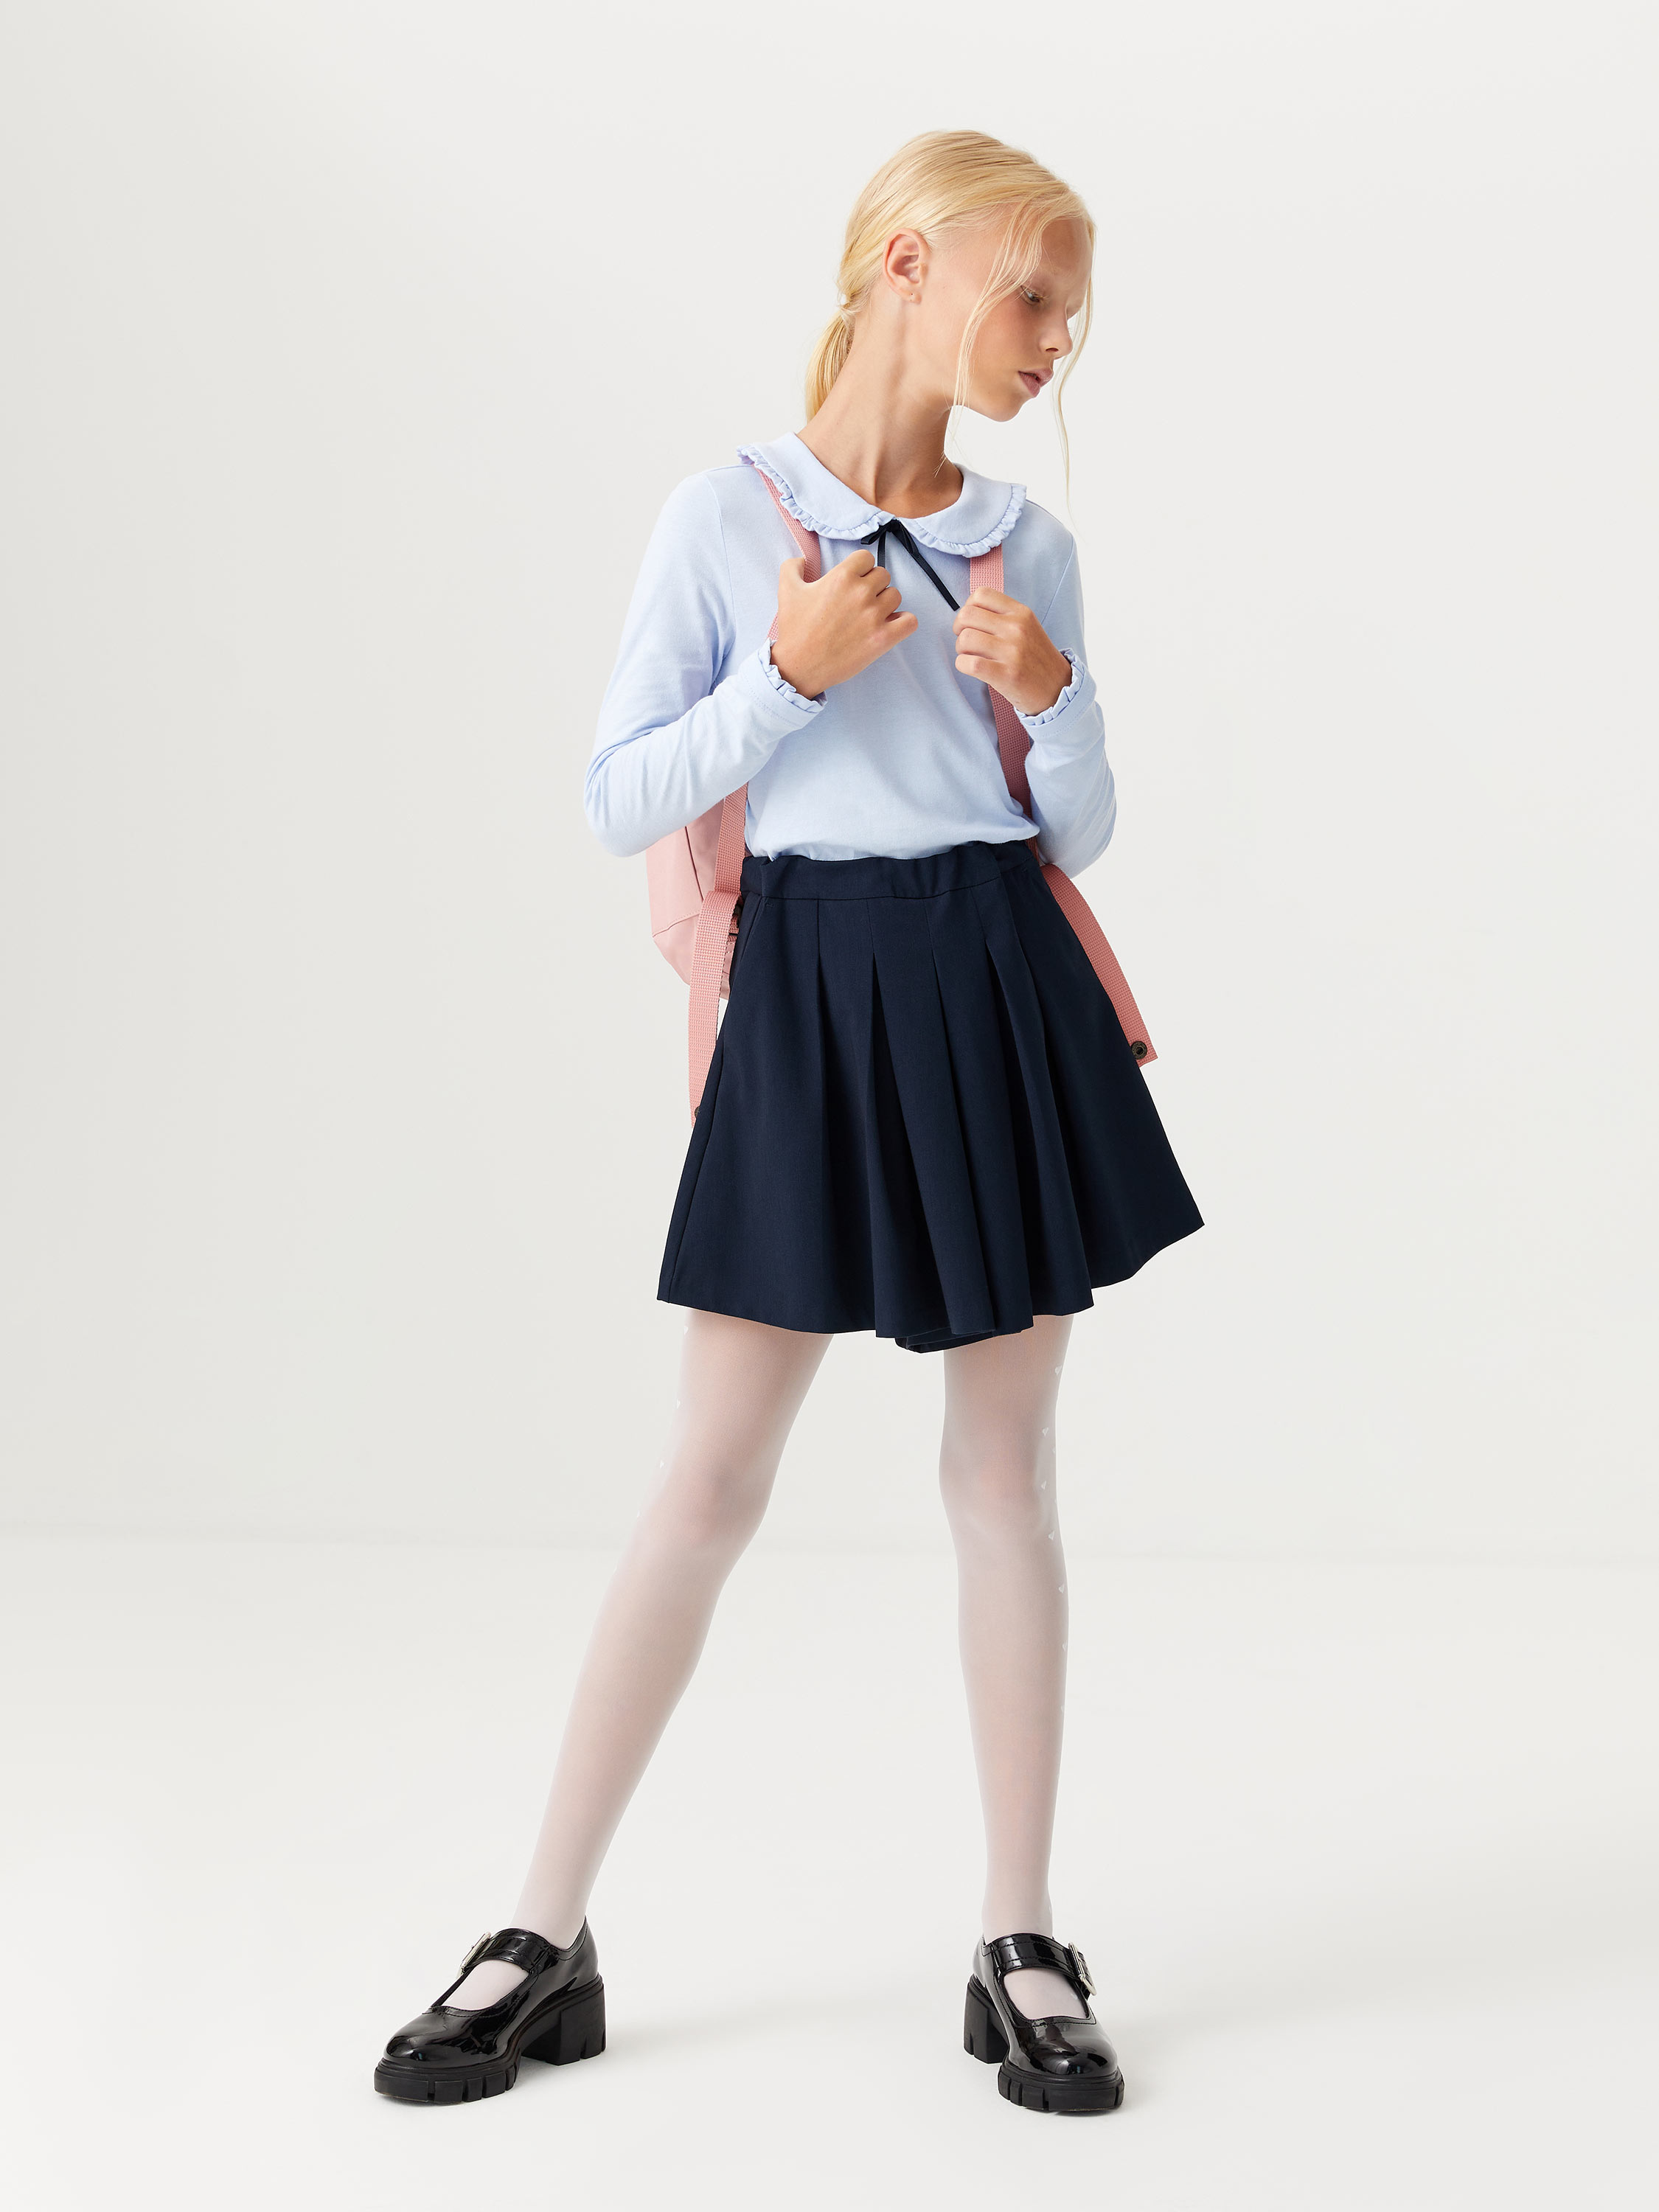 Юбка-шорты со складками для девочек цвет: темно-синий, артикул: 1808051501  – купить в интернет-магазине sela